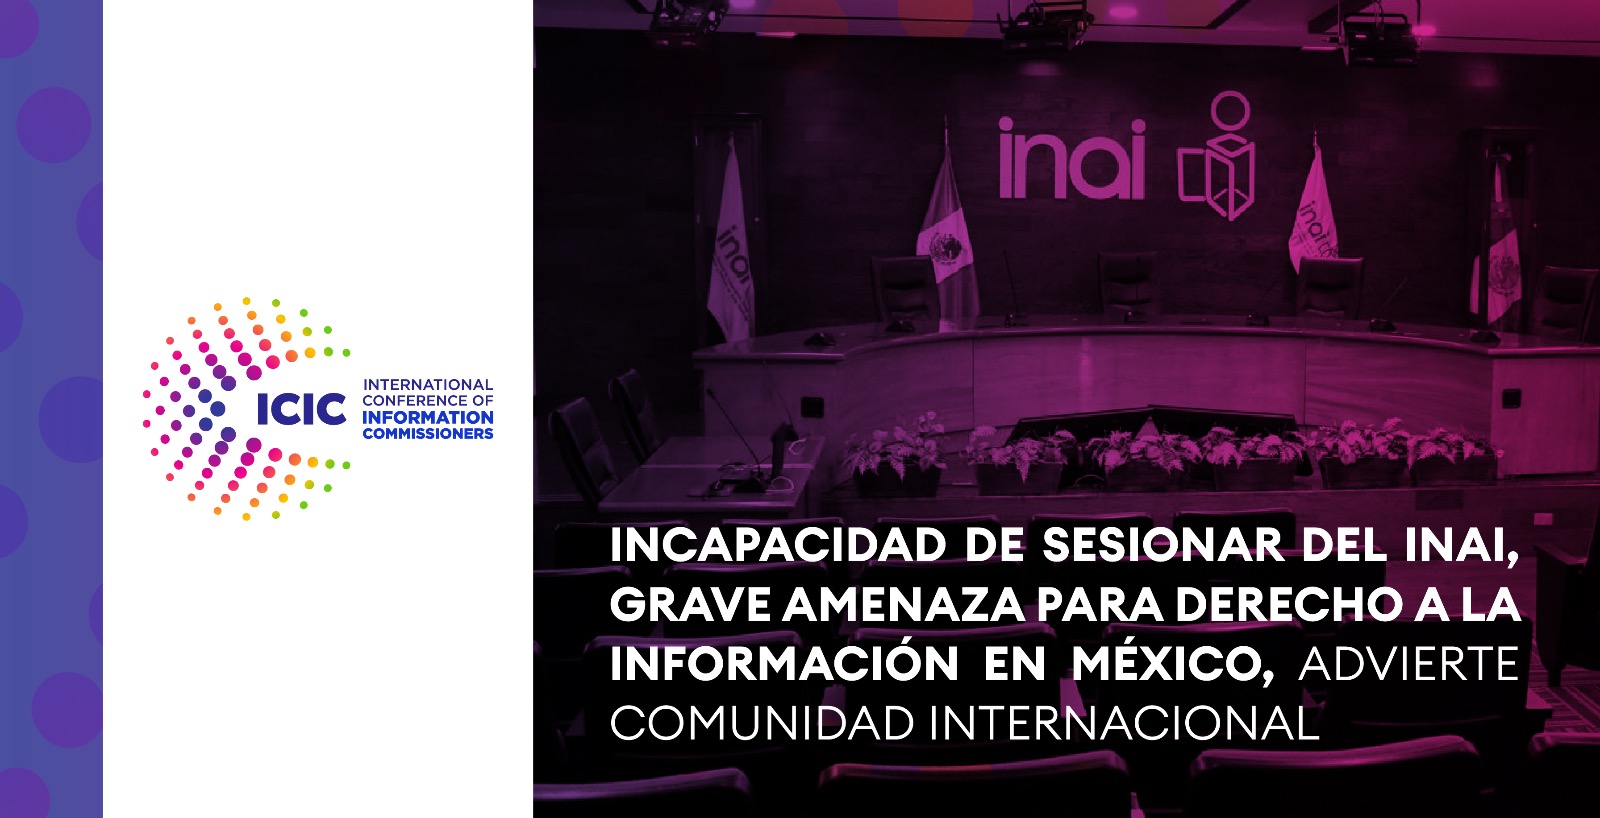 Incapacidad de sesionar del INAI, grave amenaza para el derecho a la información, advierte comunidad internacional